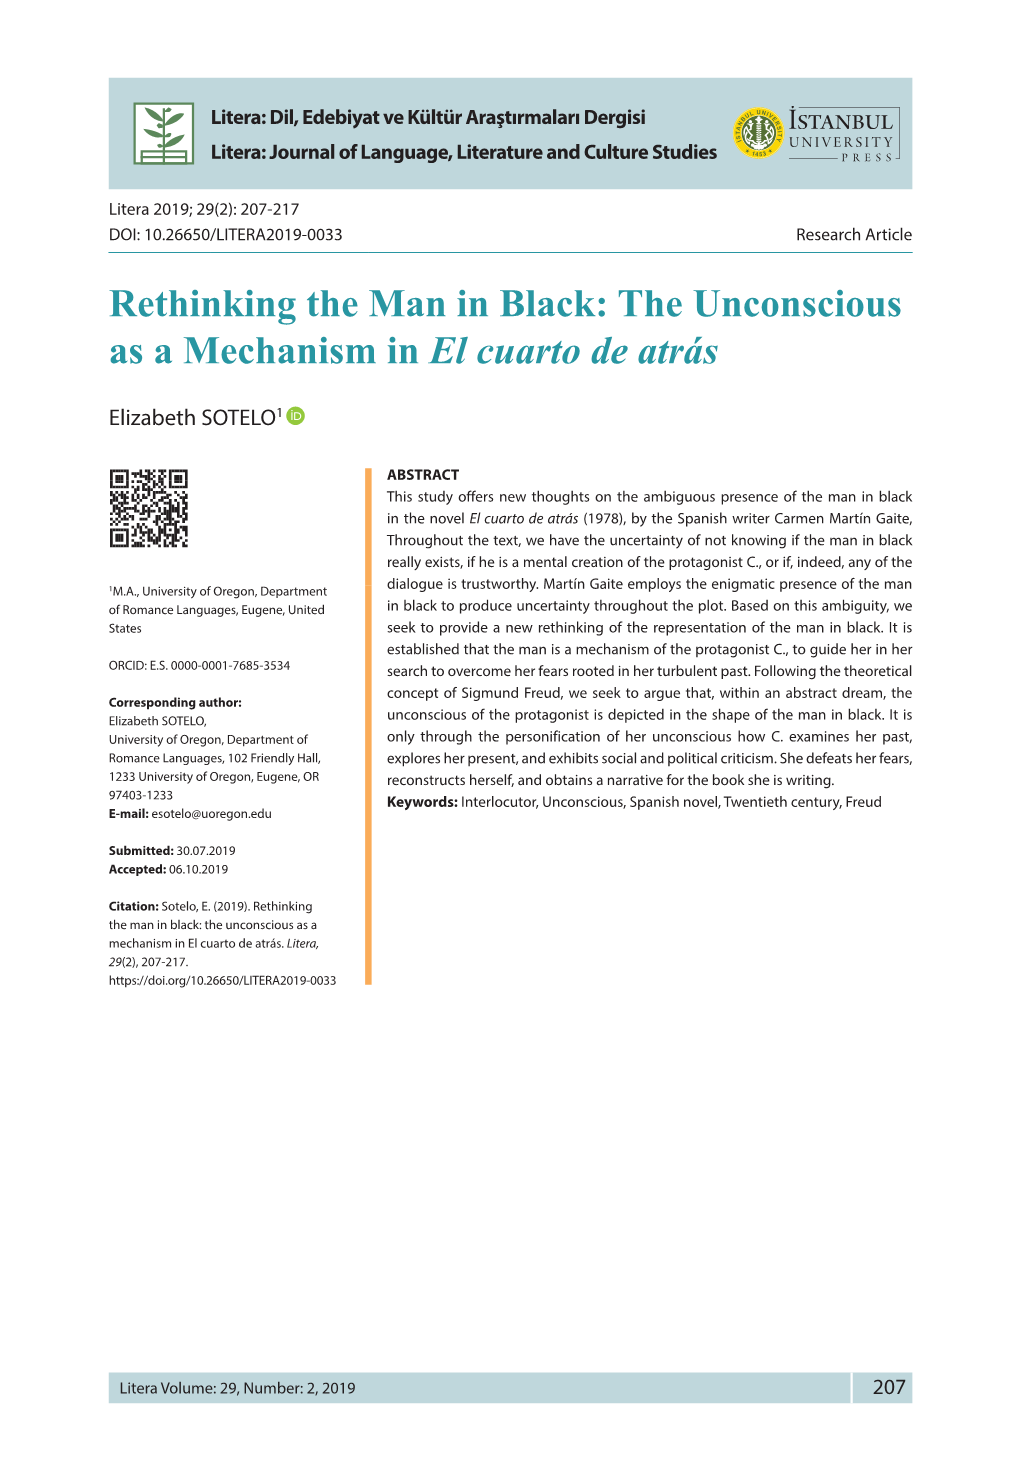 Rethinking the Man in Black: the Unconscious As a Mechanism in El Cuarto De Atrás